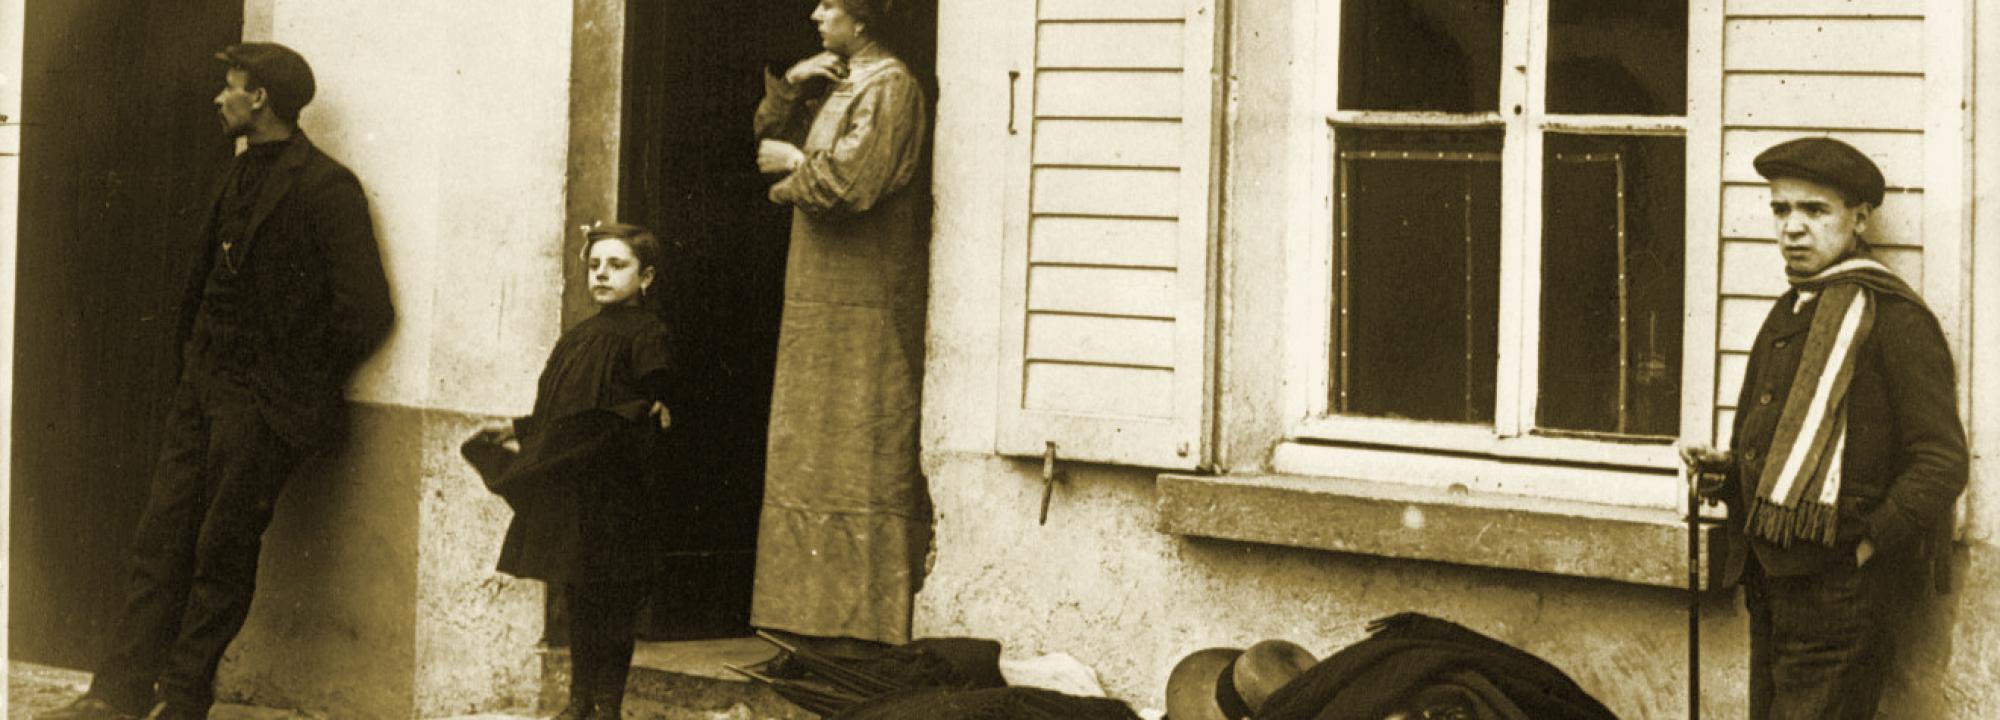 Réfugiés près d'Alost, ce qu'ils ne peuvent emporter est sur le trottoir, 1914 